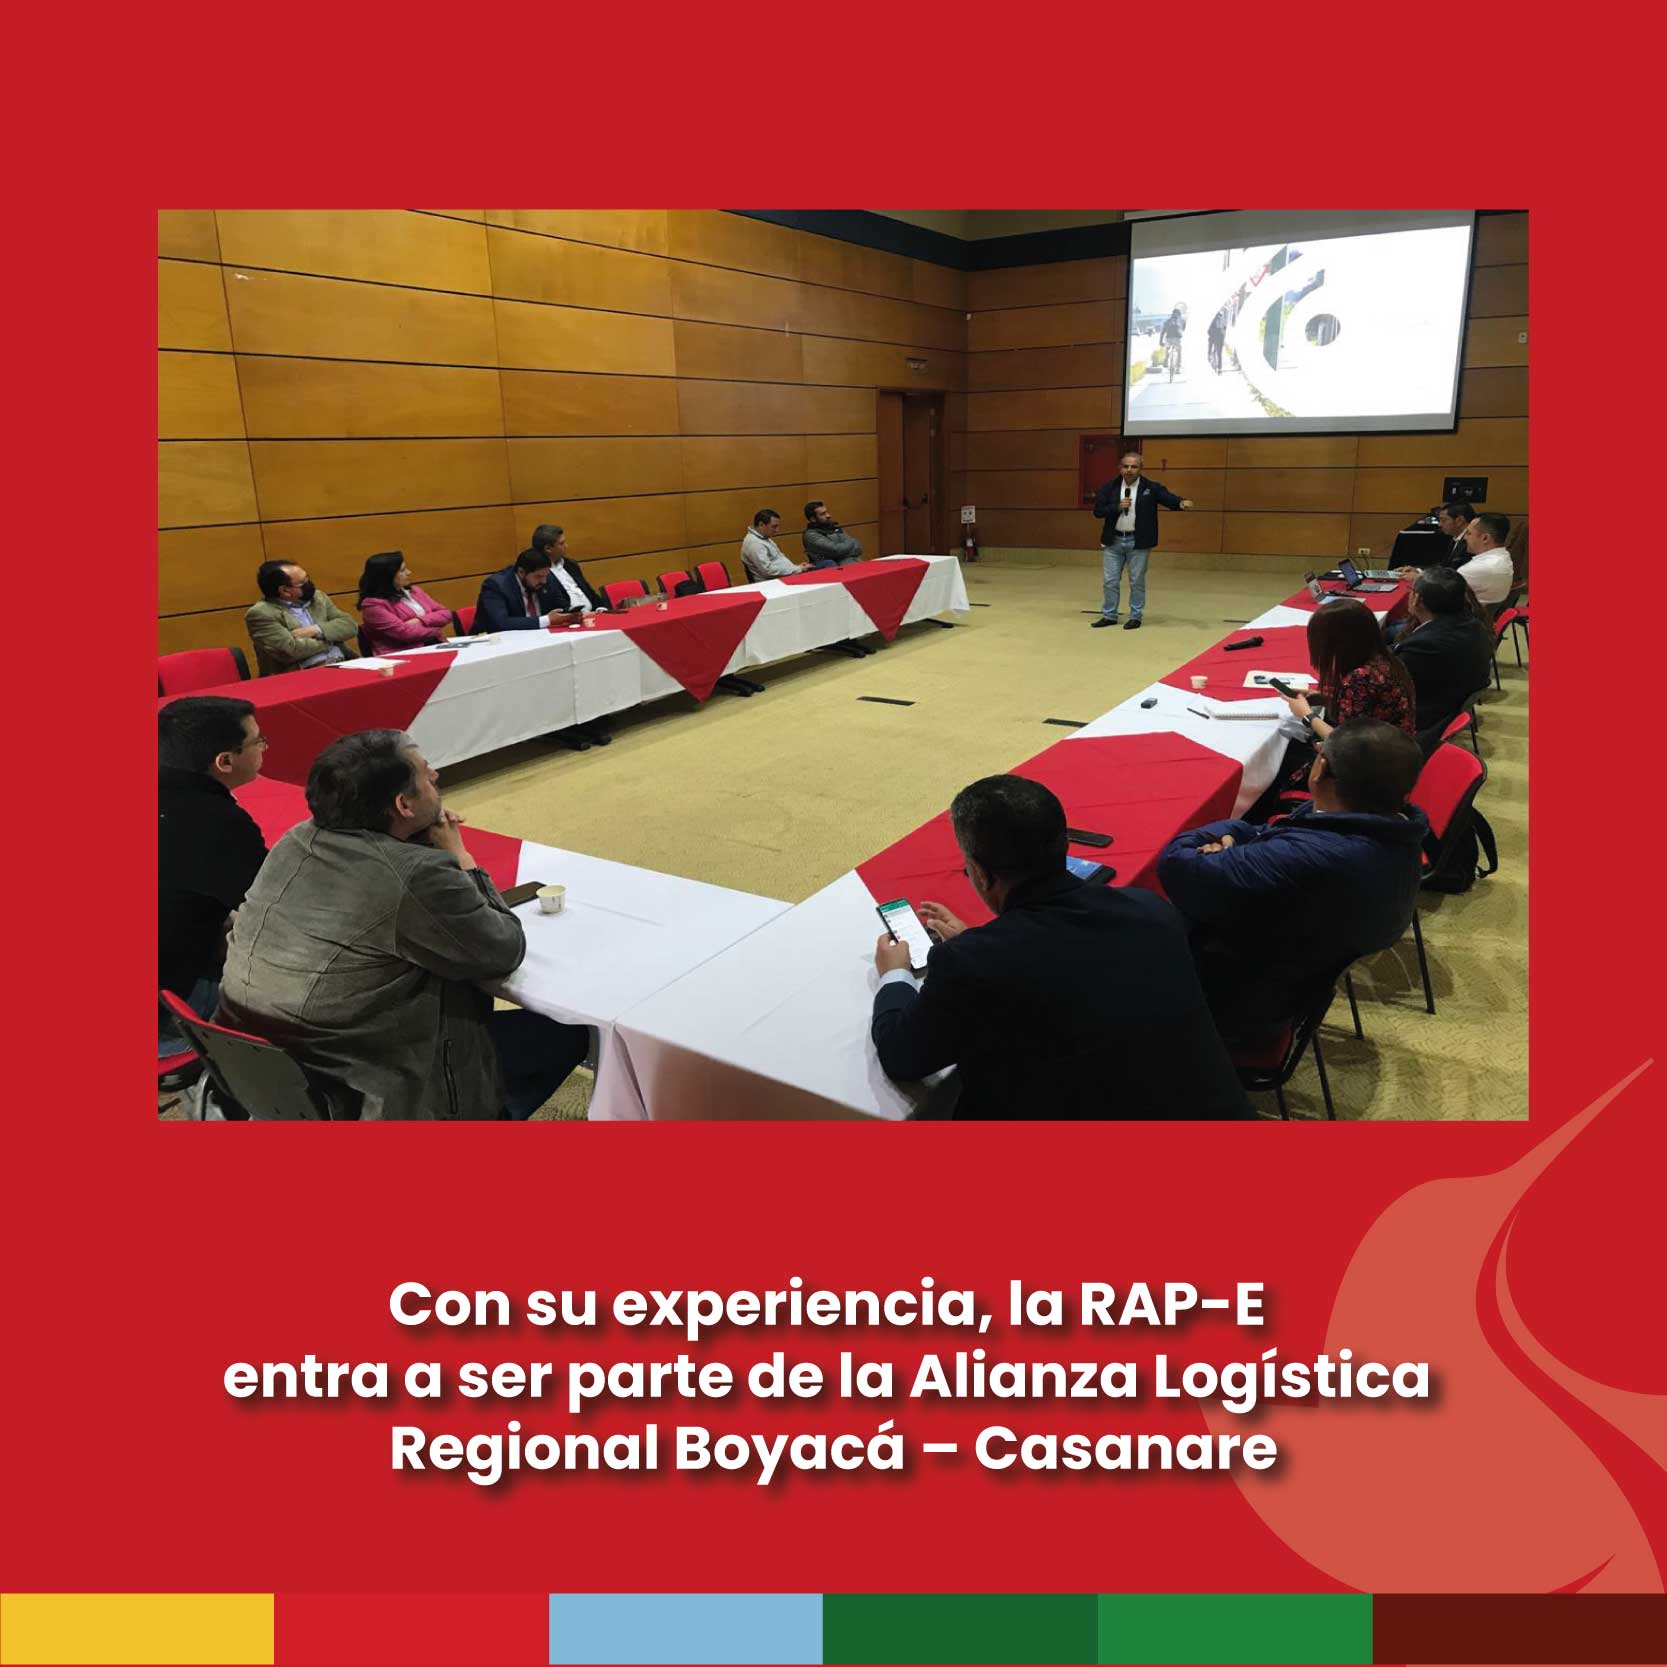 Con su experiencia, la RAP-E entra hacer parte de la Alianza Logística Regional Boyacá – Casanare